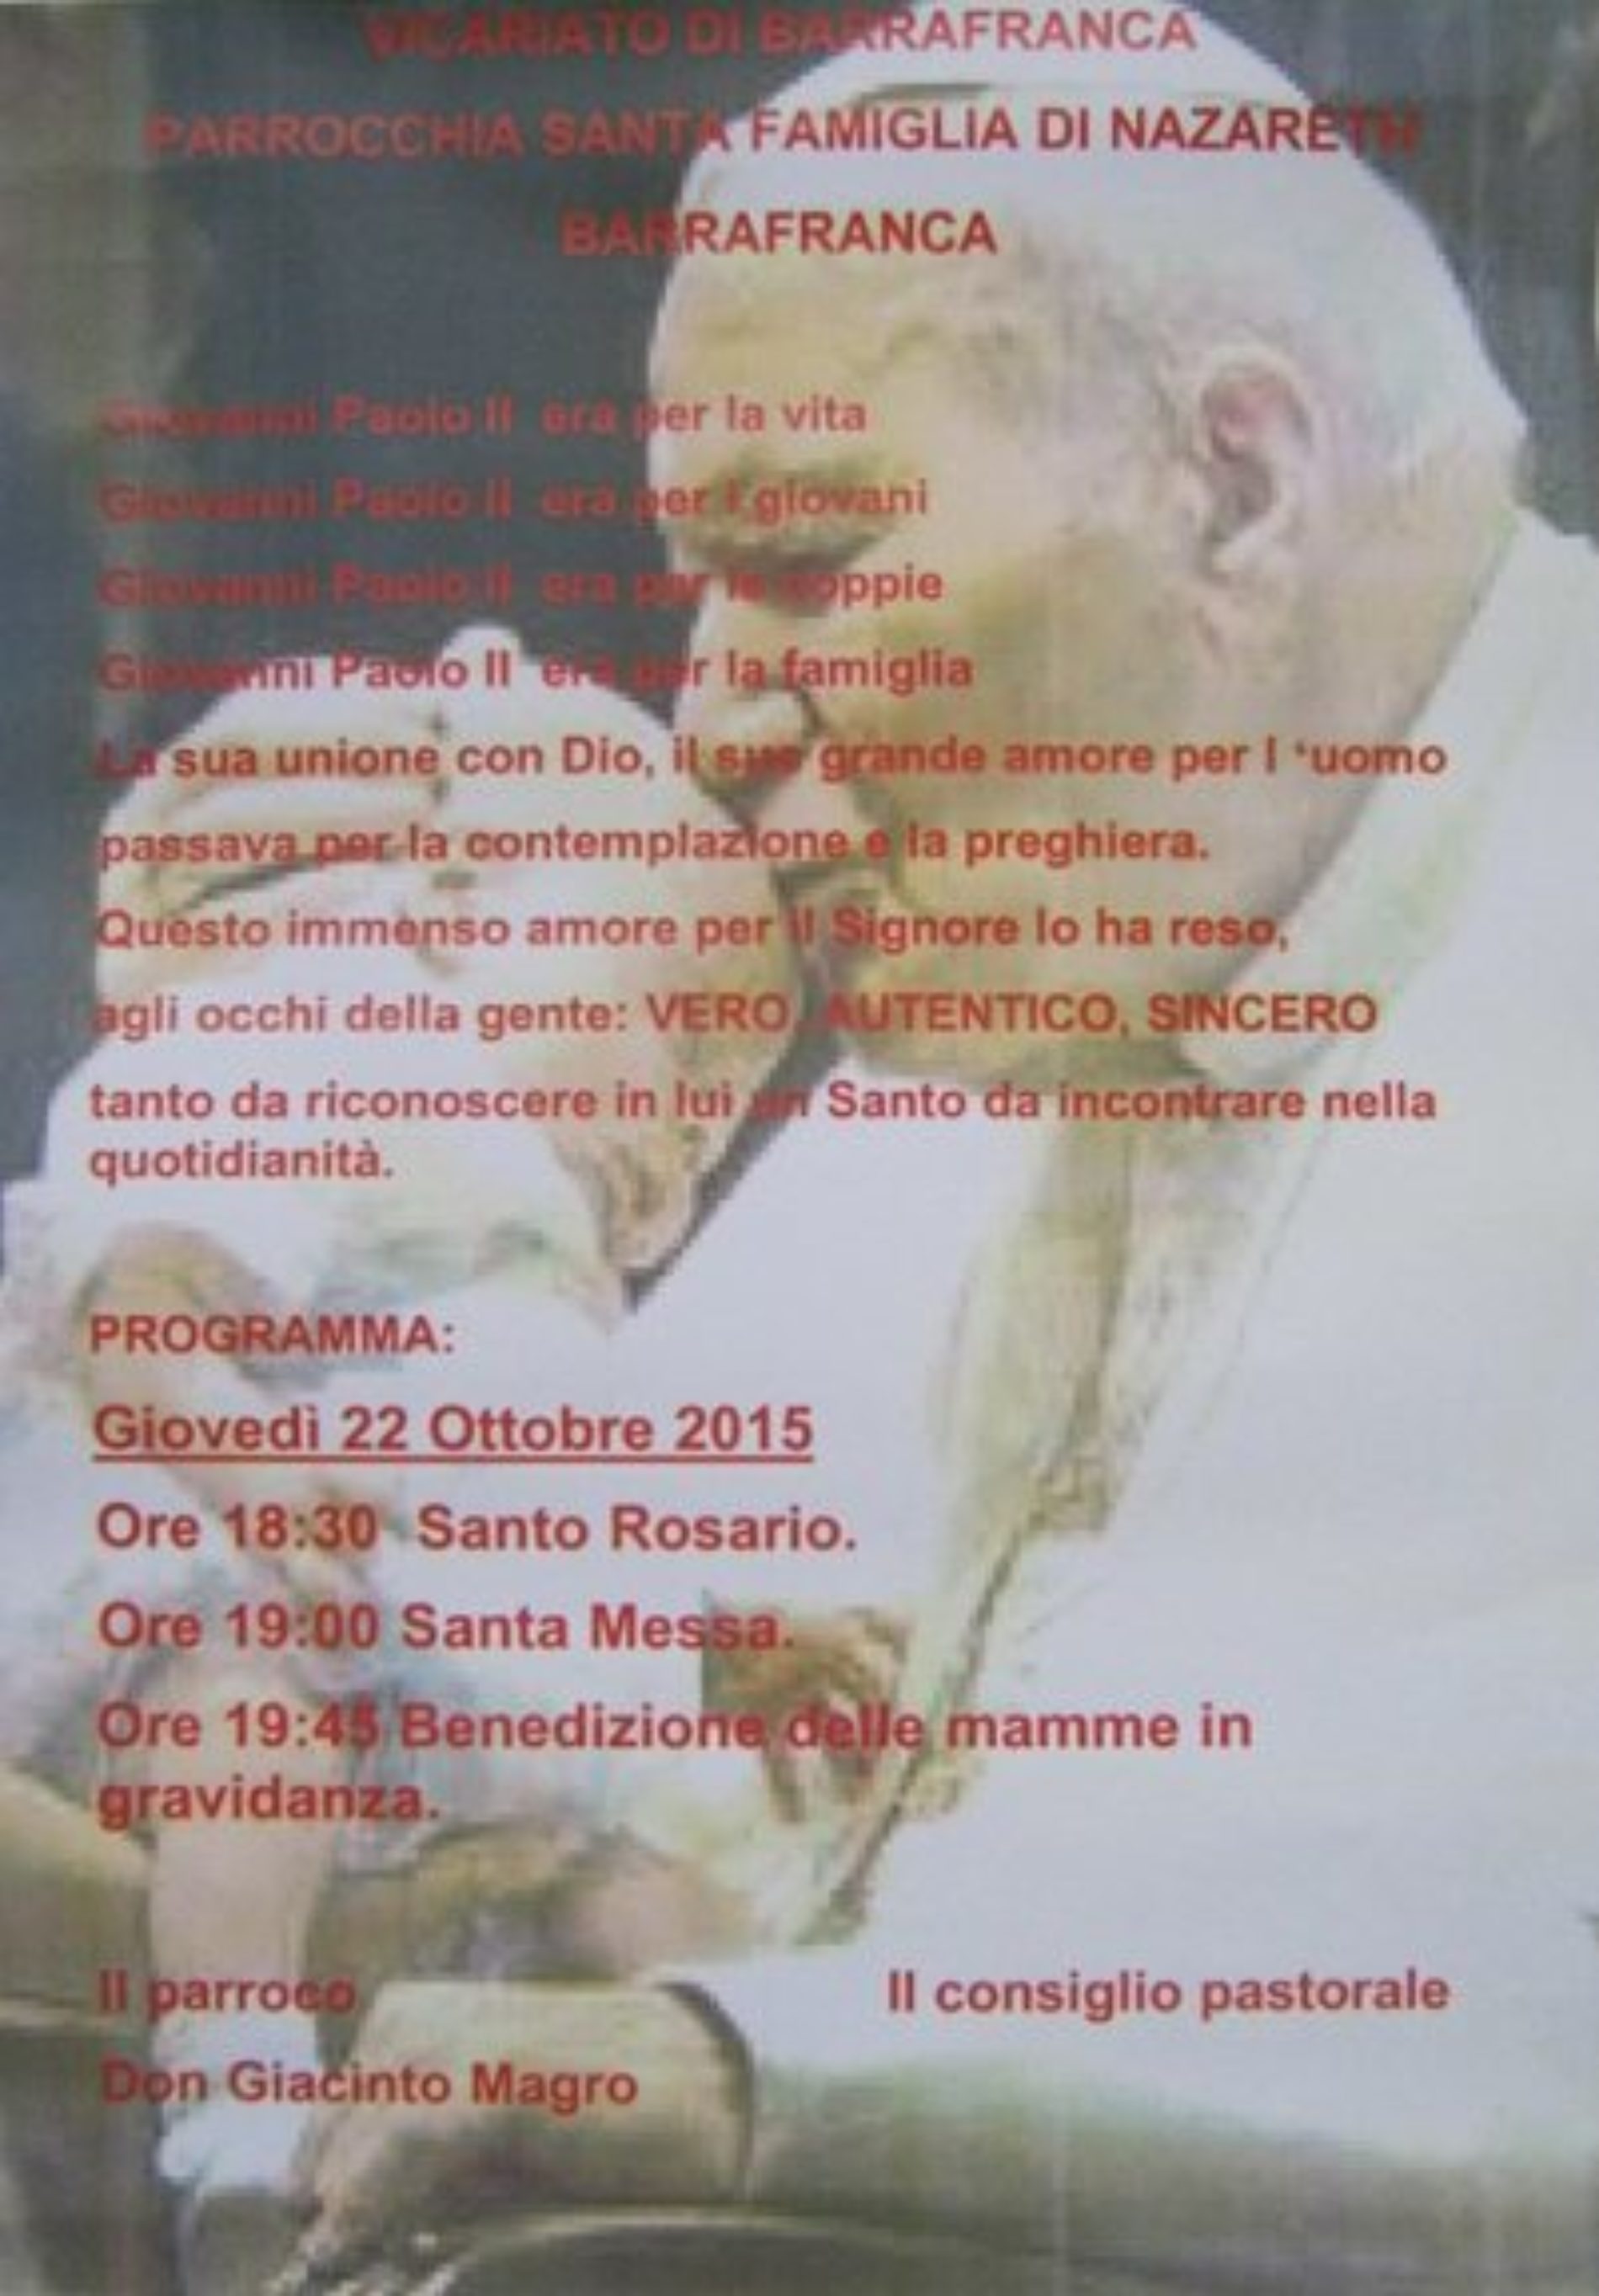 Giovedì 22 ottobre la comunità barrese della parrocchia Santa Famiglia di Nazareth festeggerà san Giovanni Paolo II.